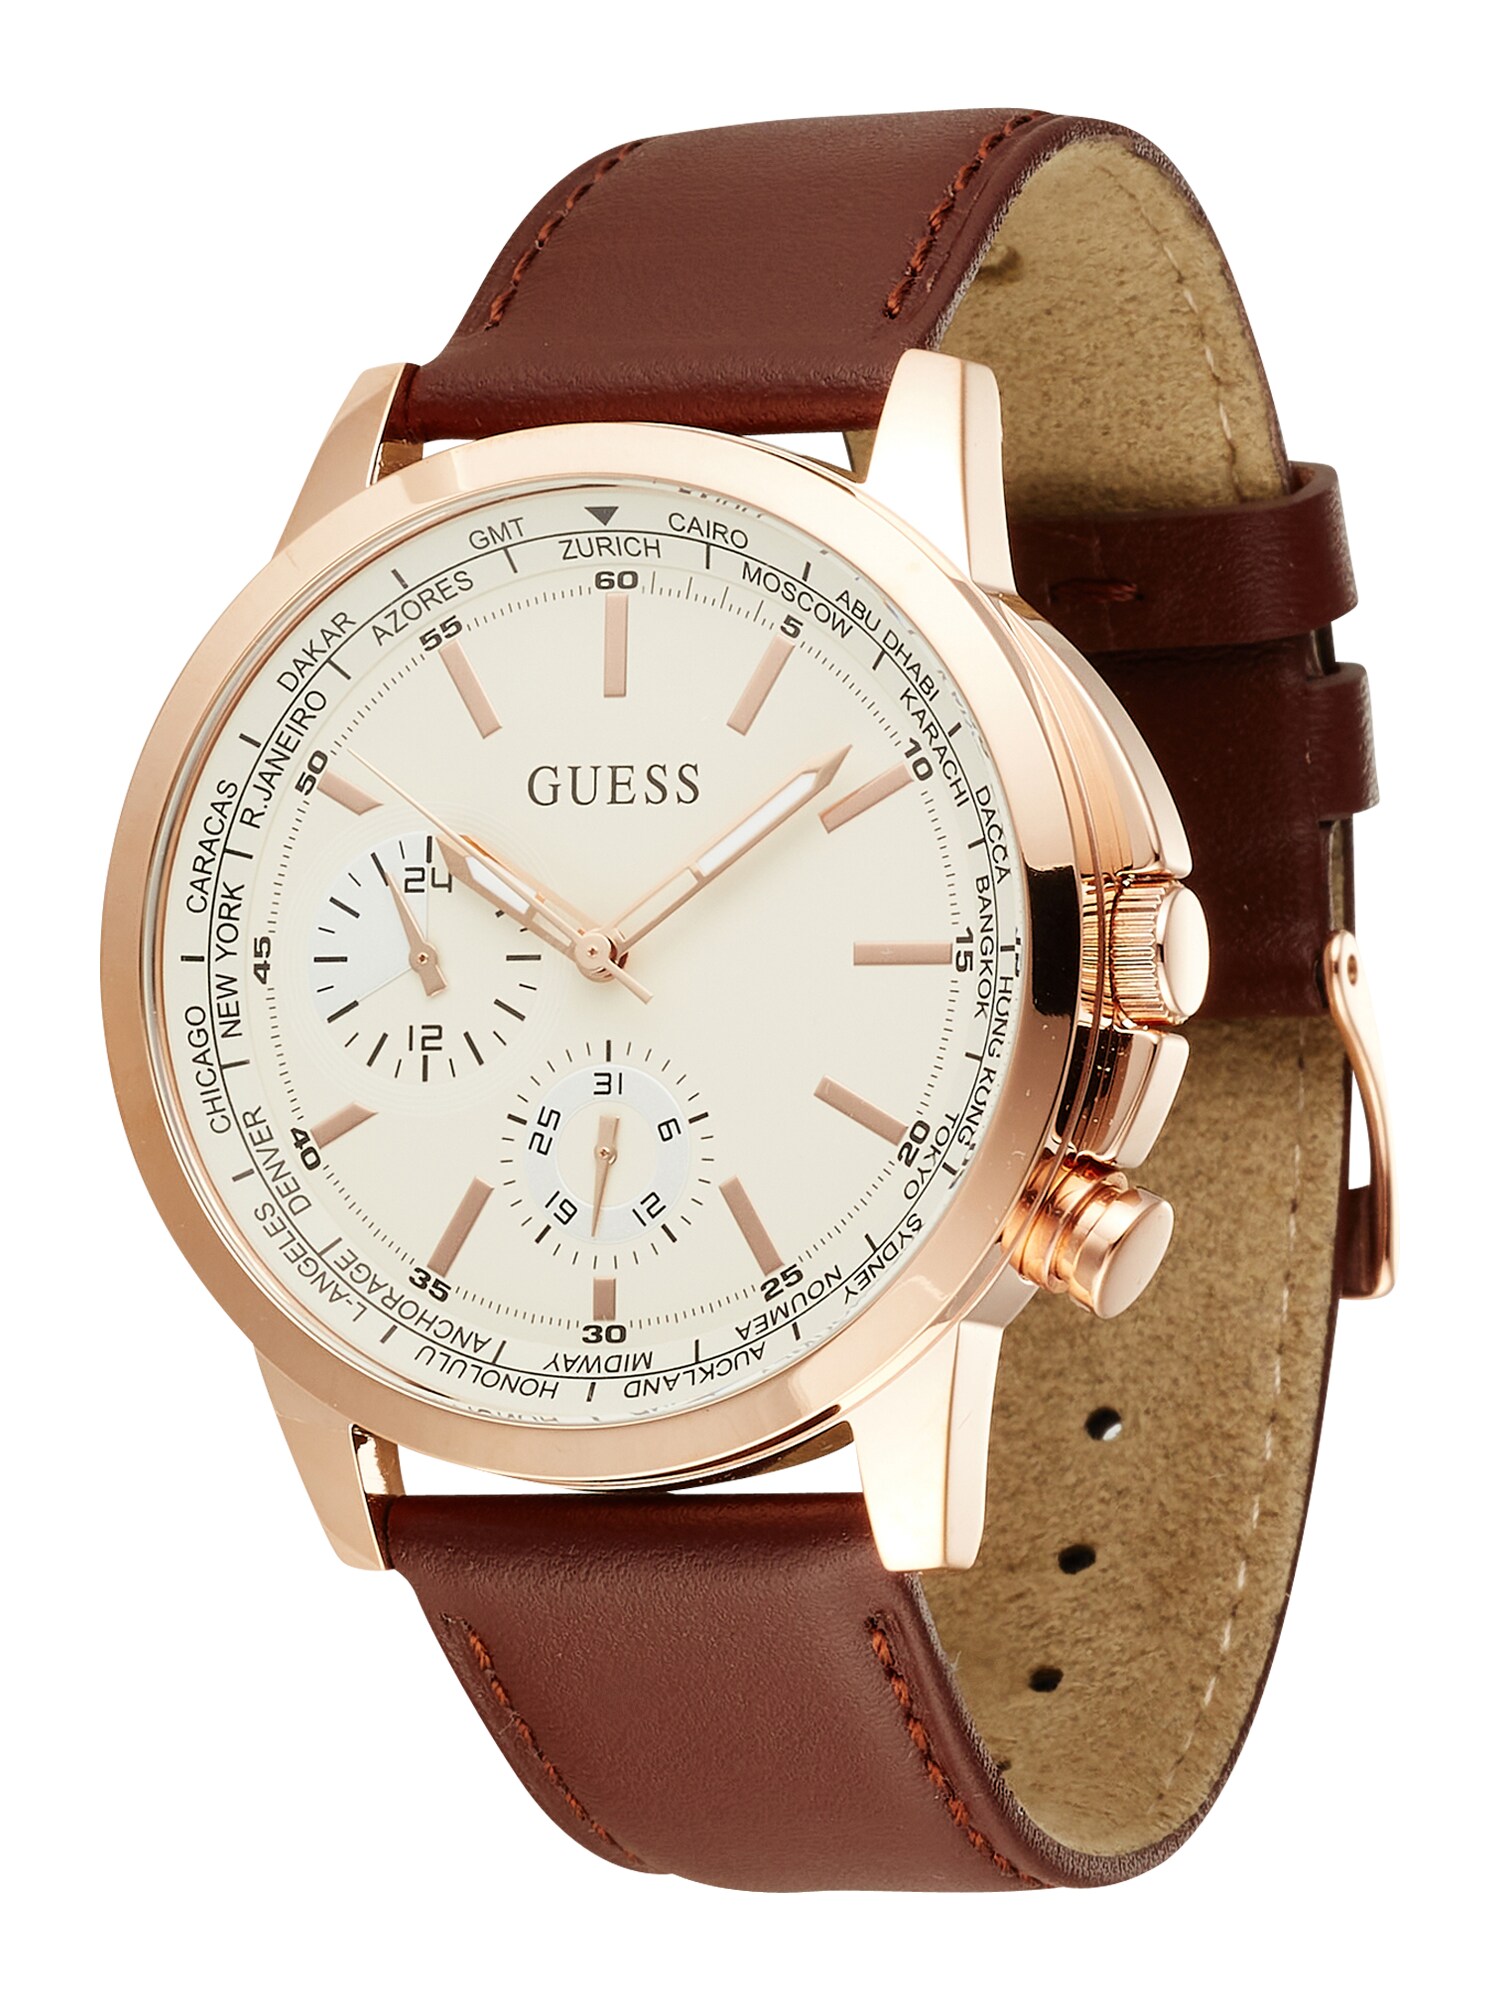 GUESS Analoginis (įprasto dizaino) laikrodis kremo / kaštoninė spalva / rožinė